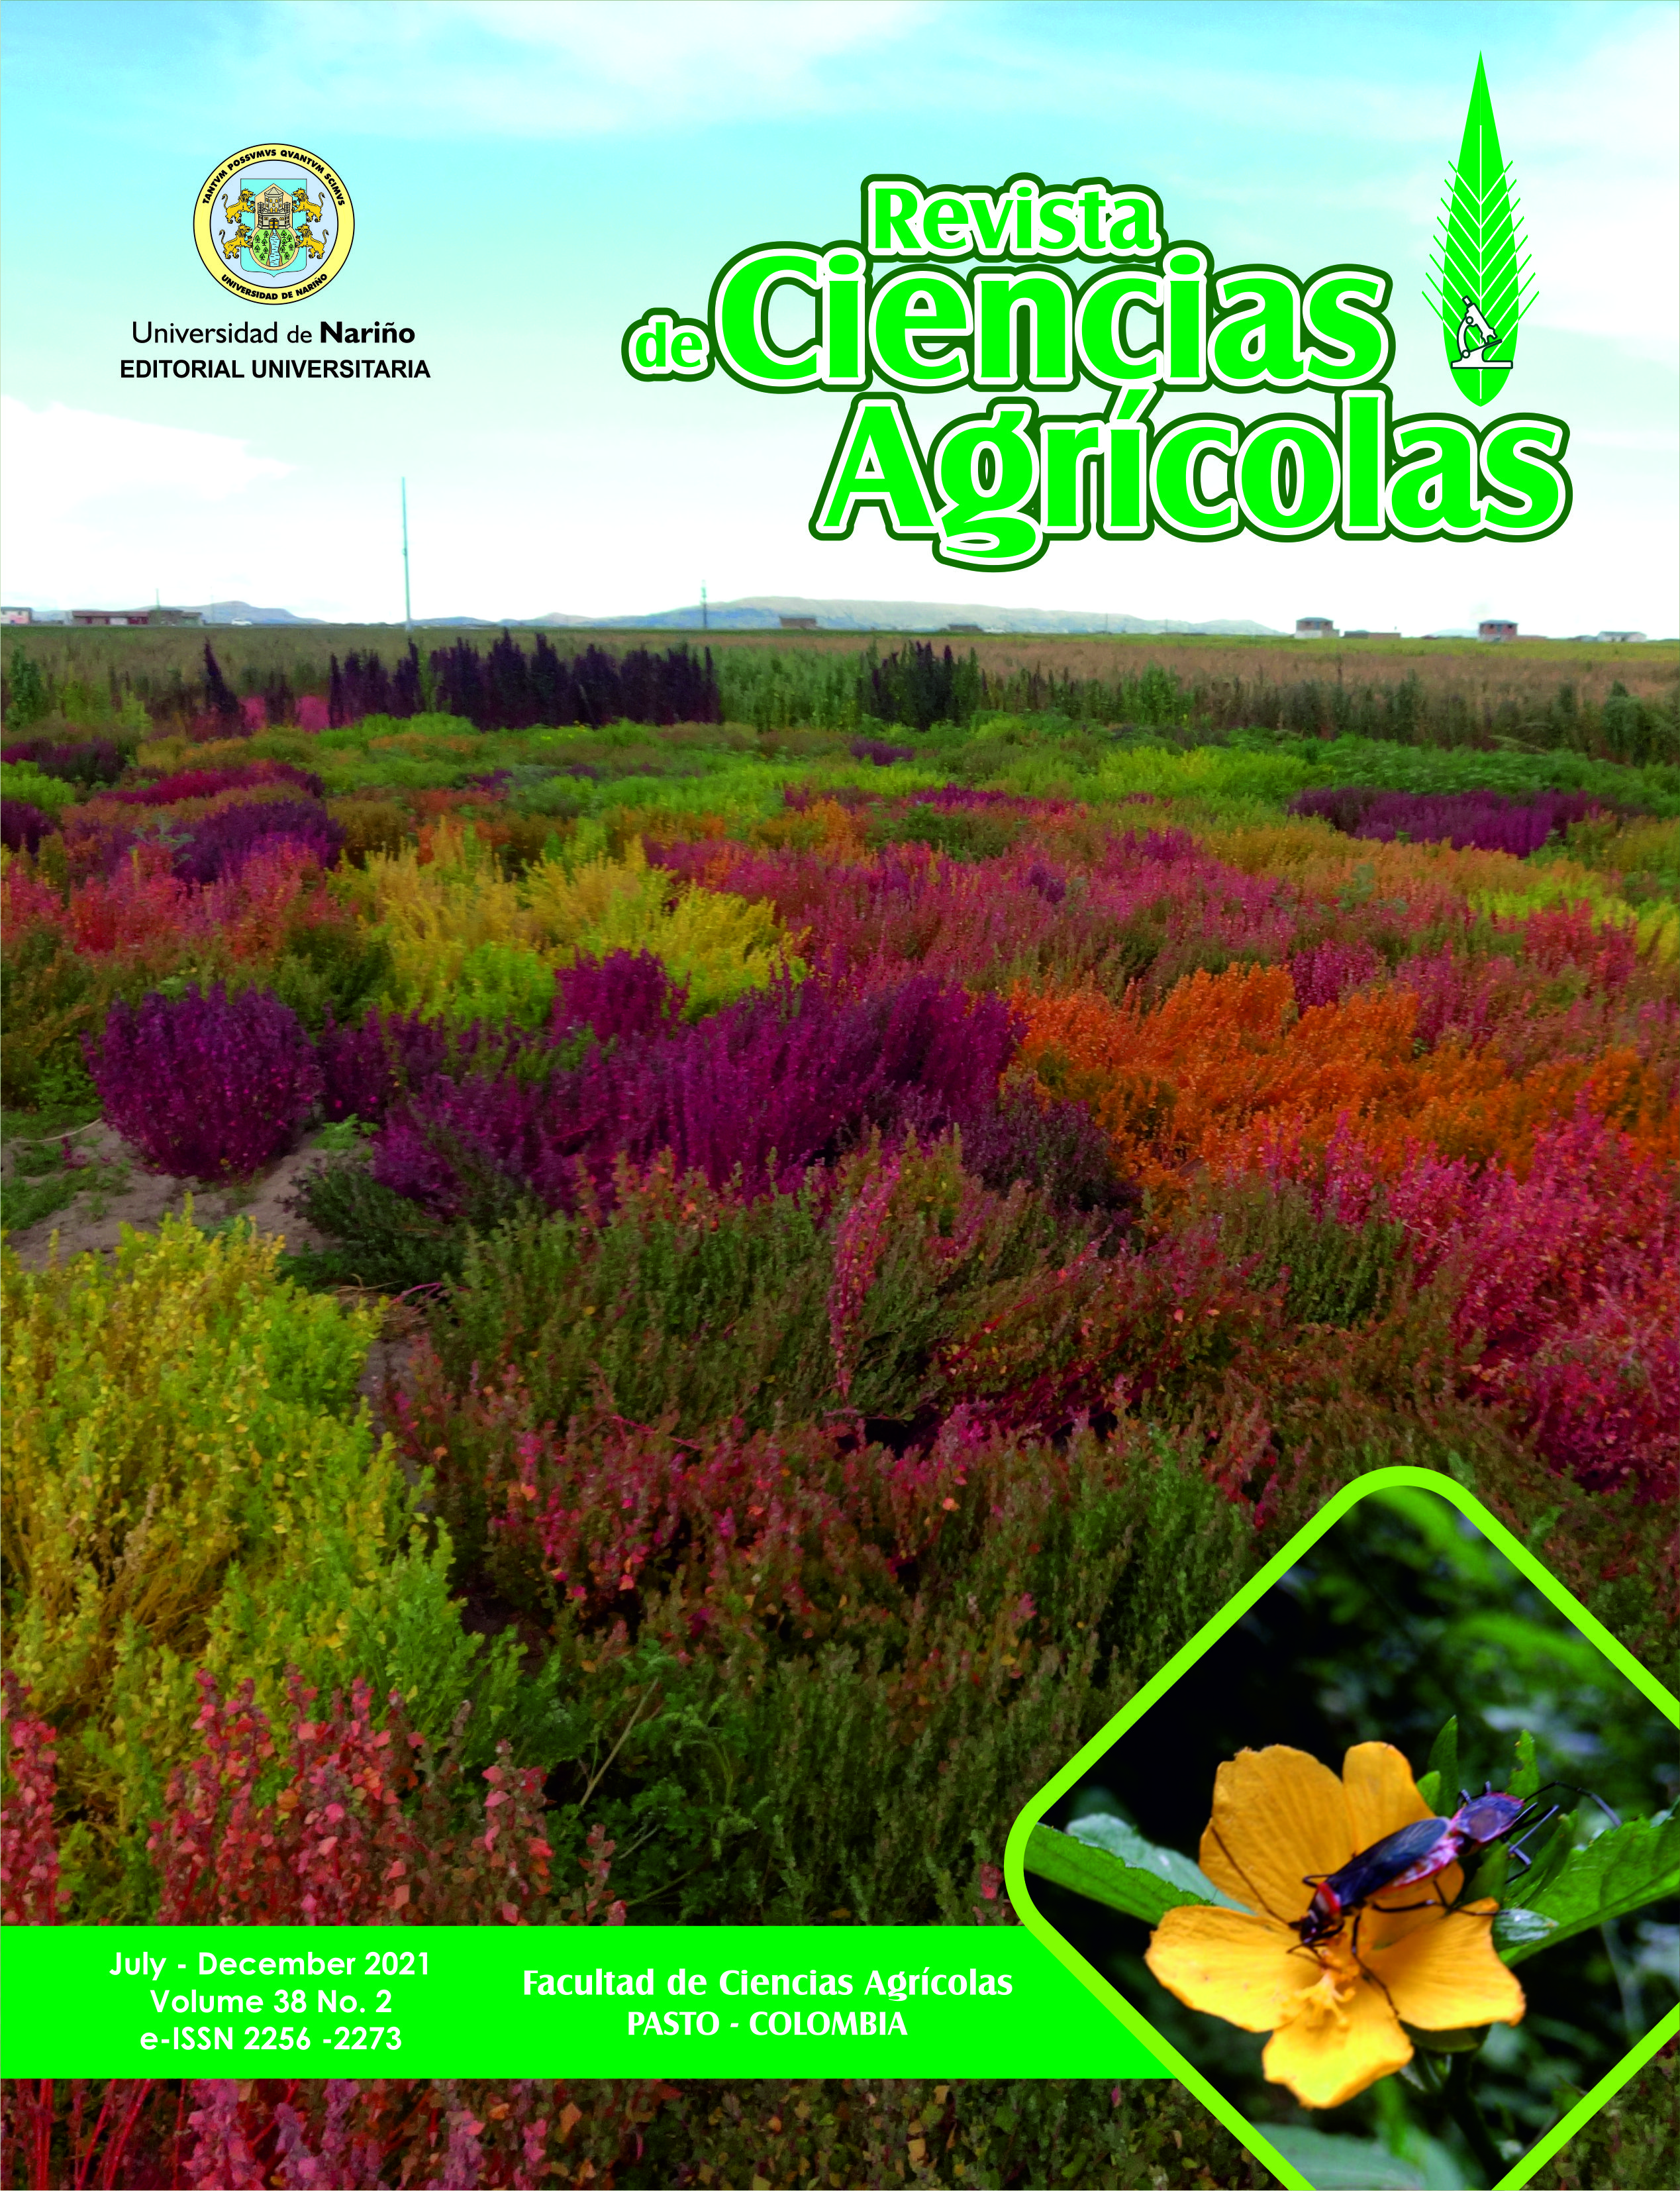 					View Vol. 38 No. 2 (2021): Revista de Ciencias Agrícolas - Second semester, July - December 2021
				